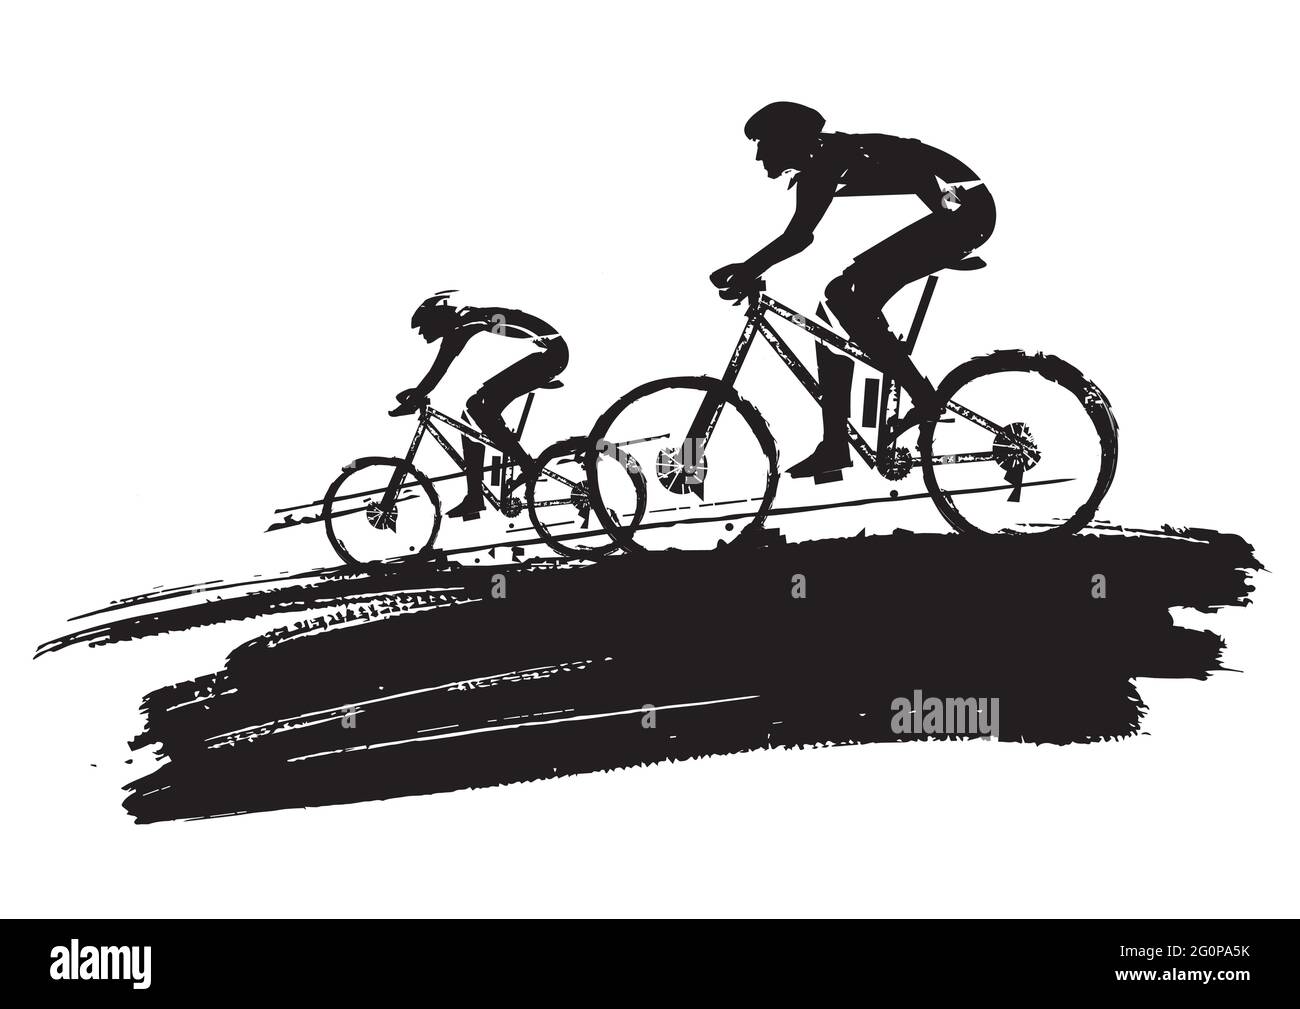 Mountainbike-Radfahrer, Grunge stilisiert. Illustration von zwei Radfahrern auf schwarzem ausdrucksstarkem Pinselstrich. Isoliert auf weißem Hintergrund. Stock Vektor